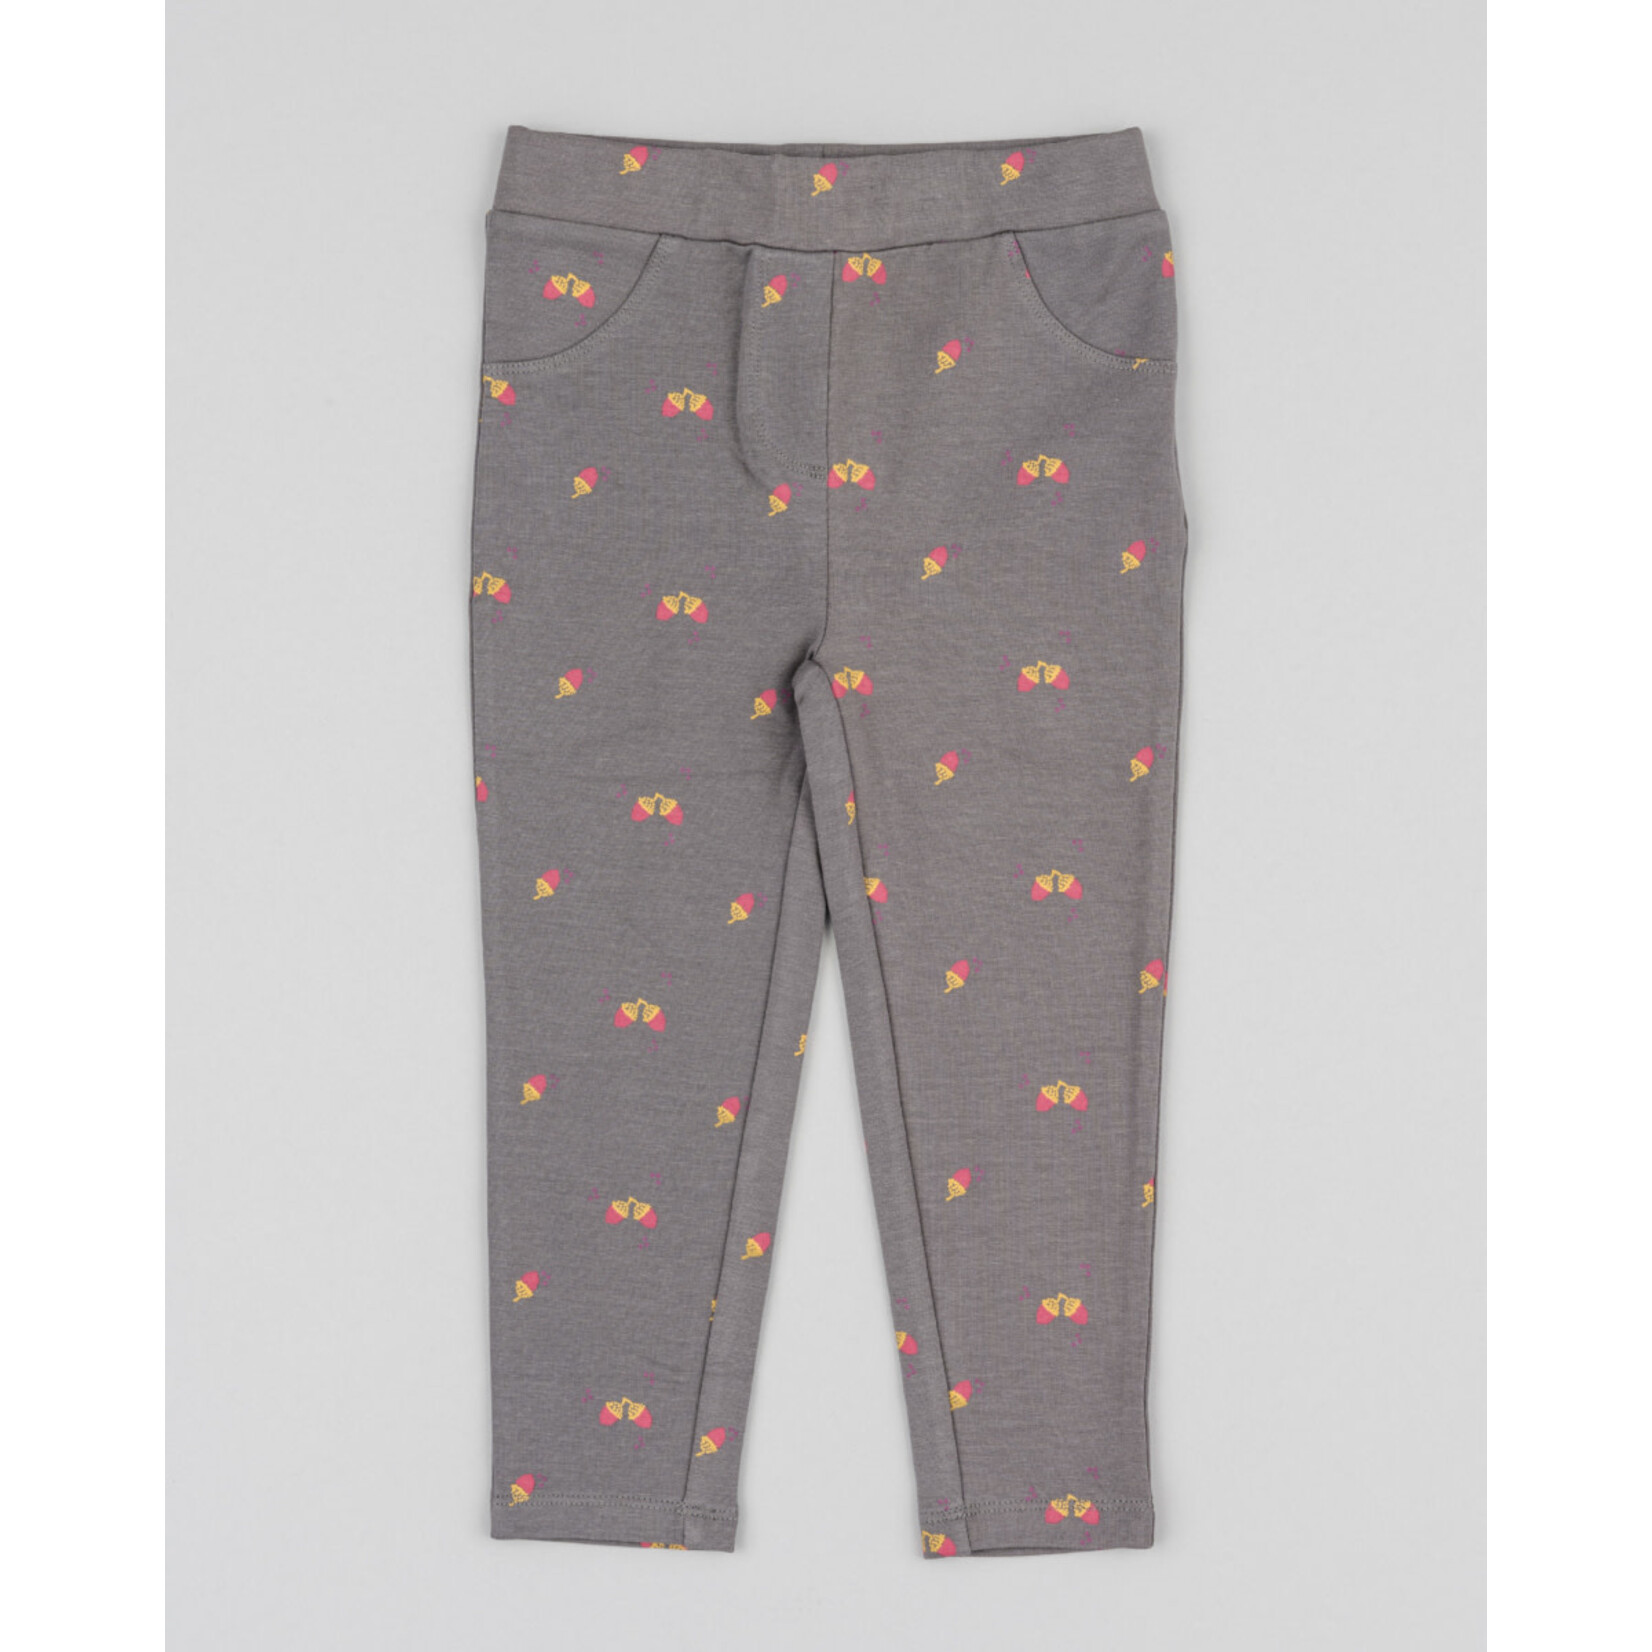 Losan LOSAN - Taupe Grey Soft Pants / Leggings with Orange and Pink Acorn Print